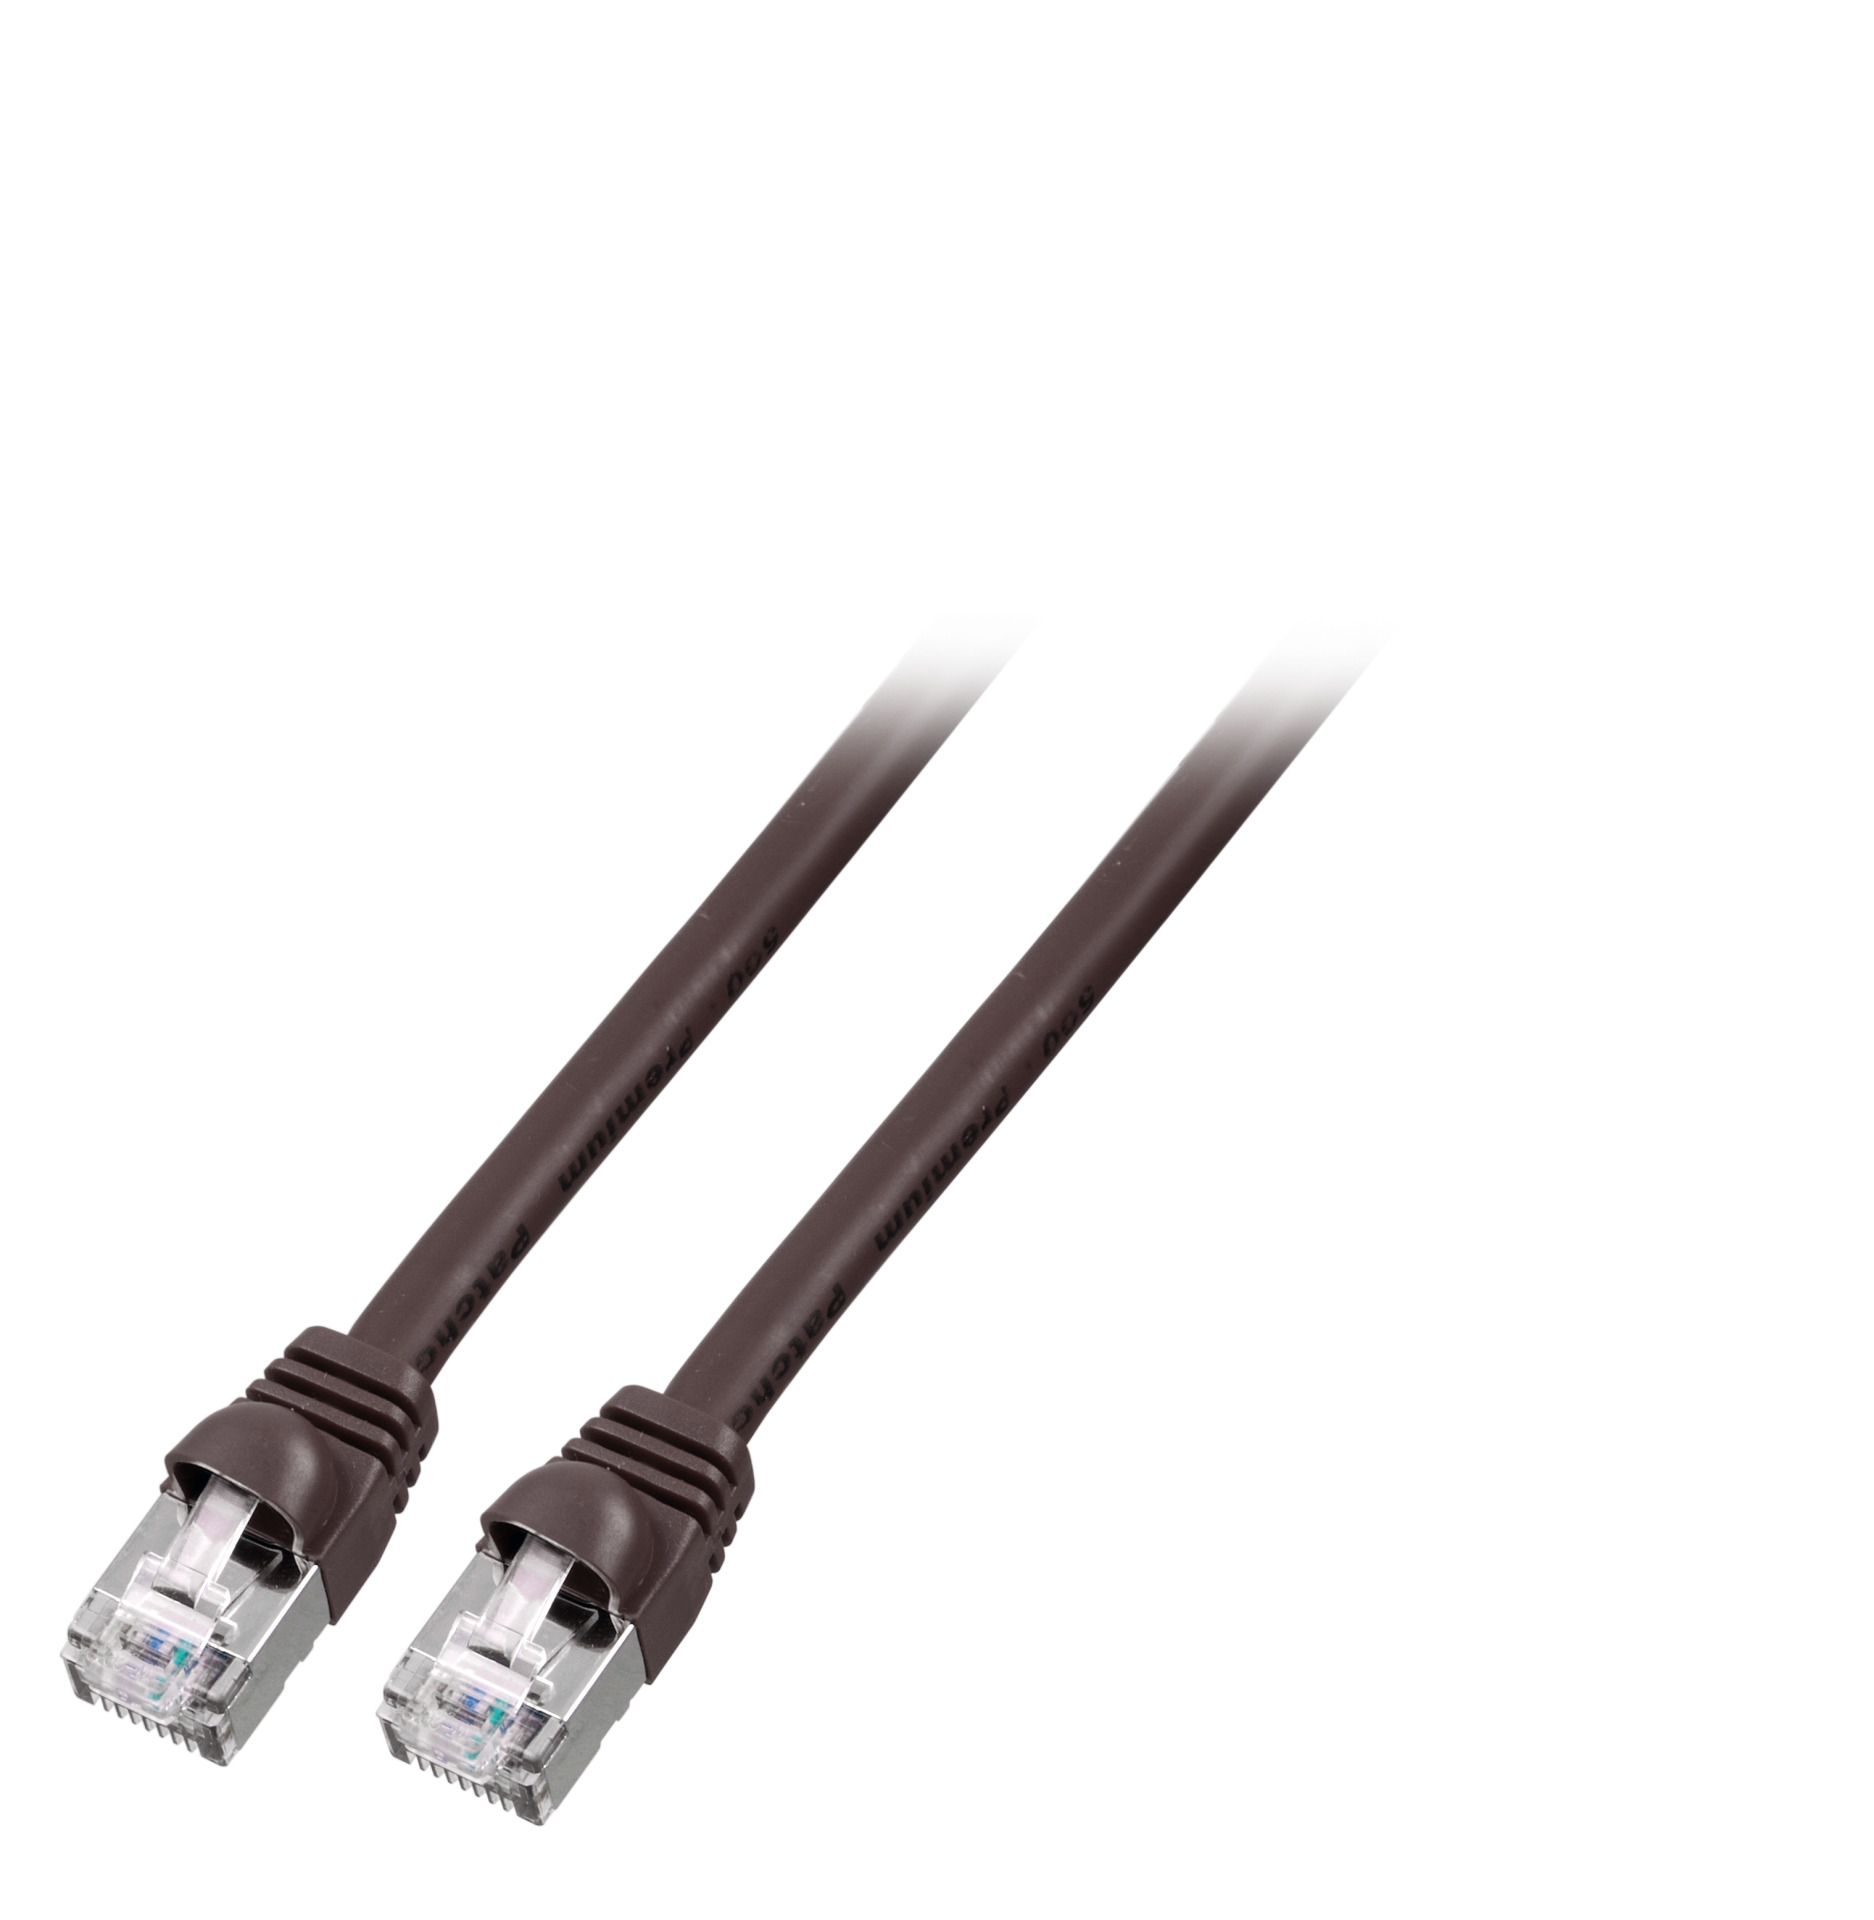 RJ45 Patch cable S/FTP, Cat.6, PVC, short boot, UL, 3m, black